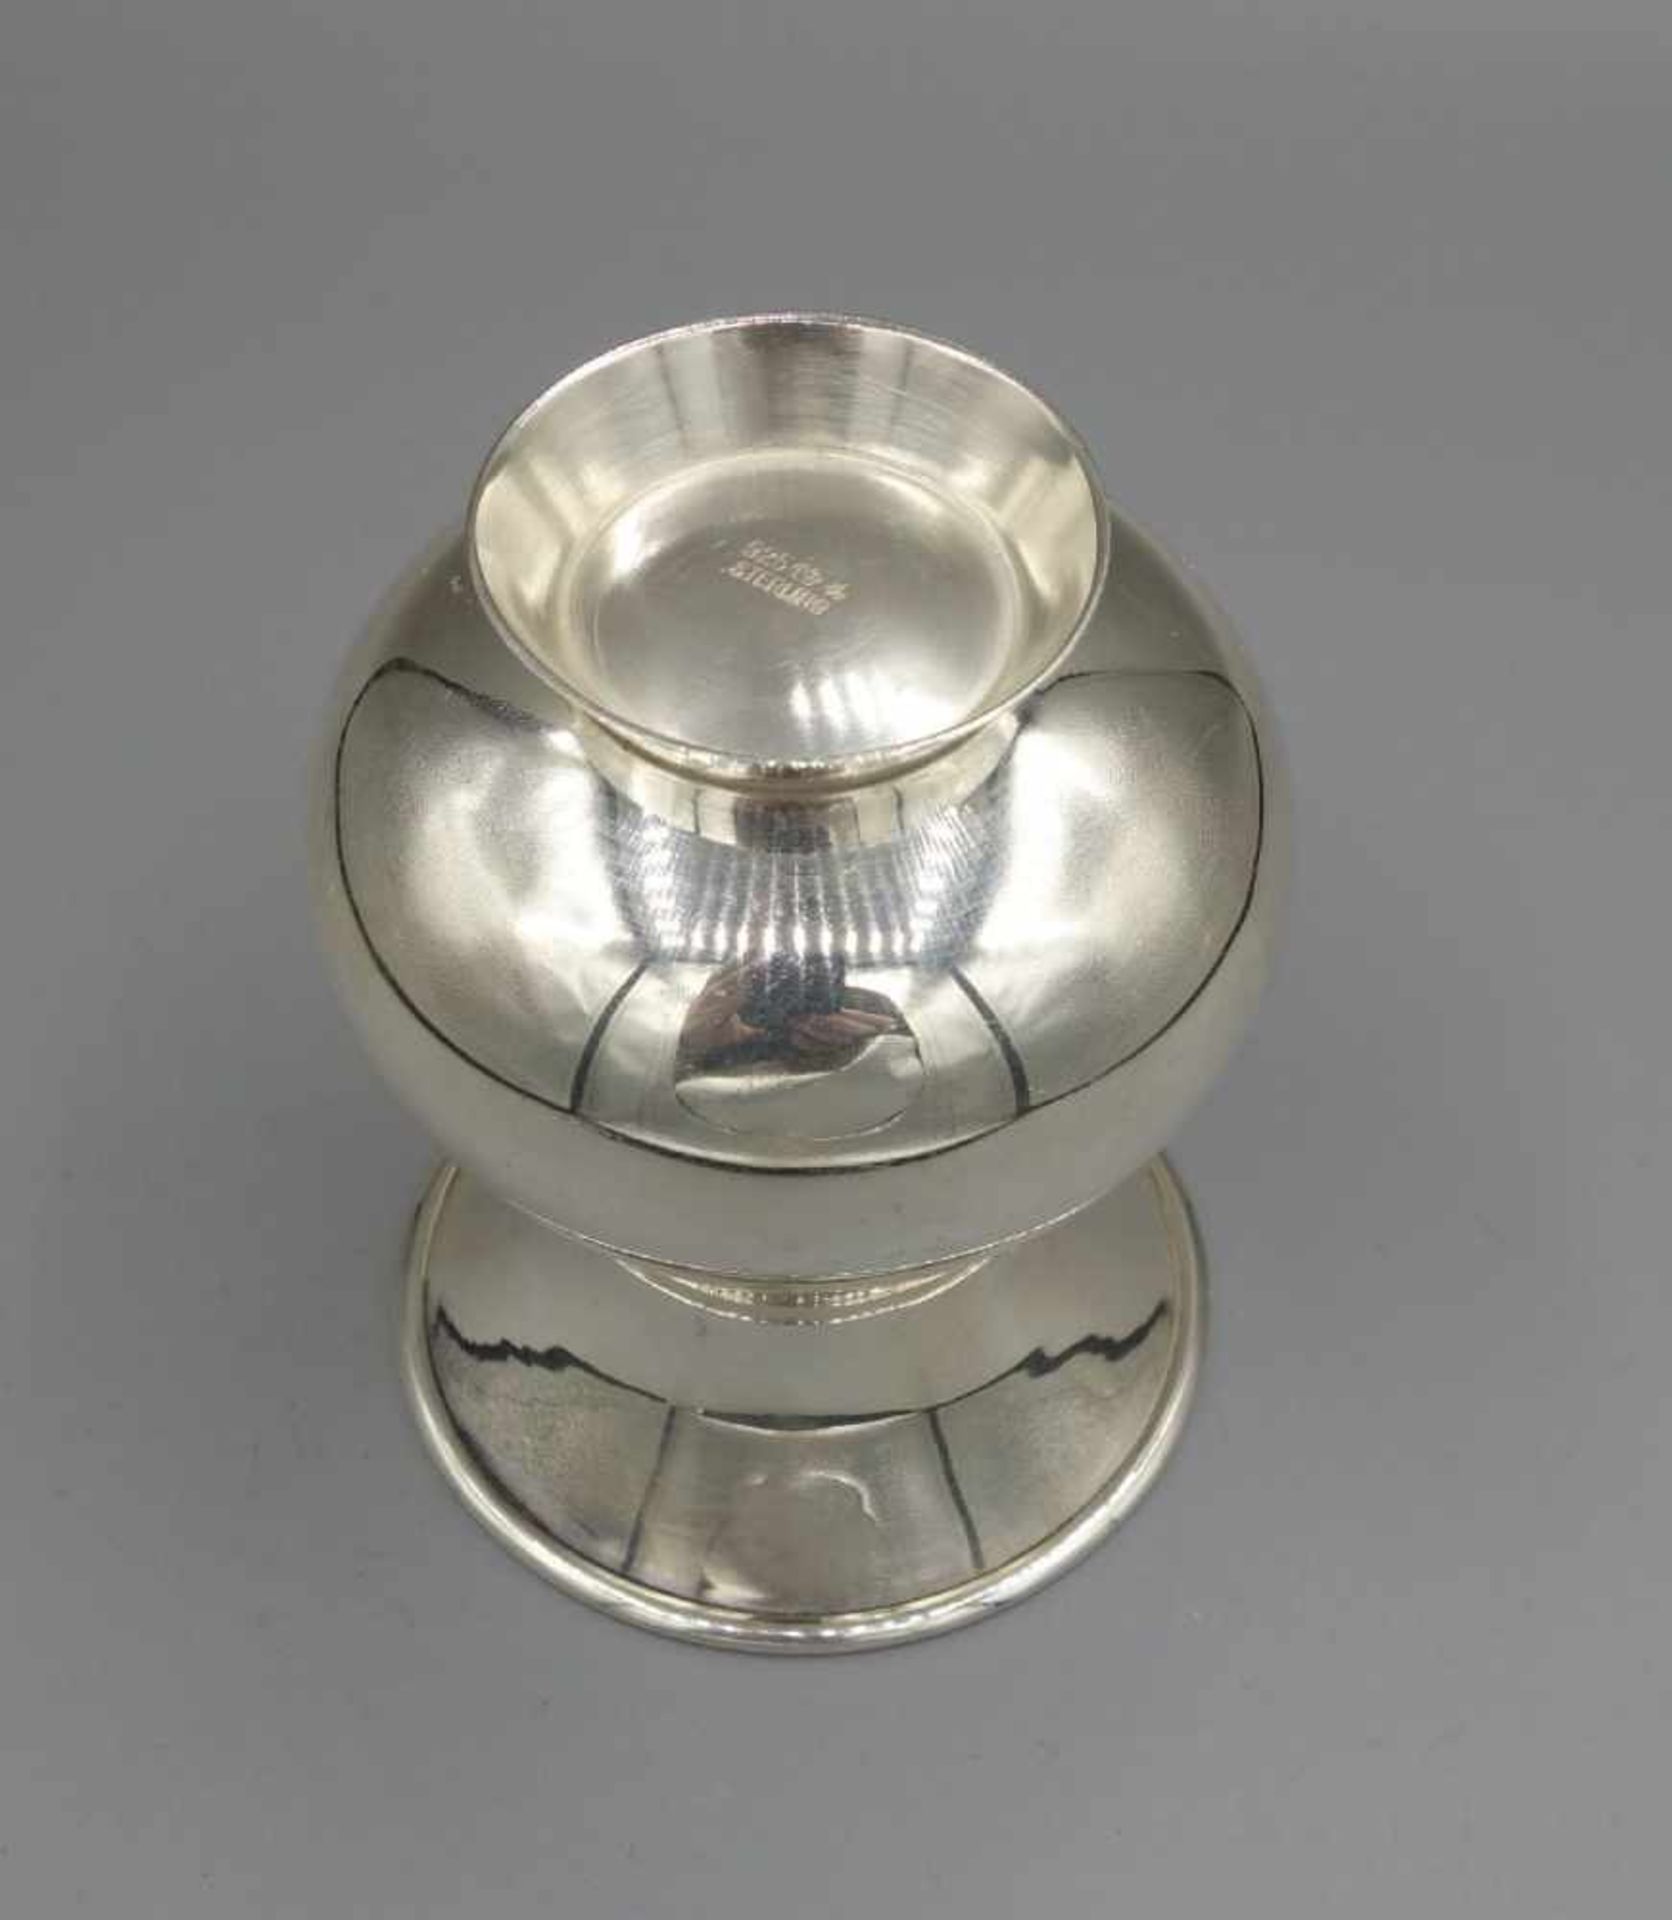 VASE, 925er Silber (80 g), bezeichnet "Sterling" und gepunzt mit Halbmond, Krone, - Image 3 of 3